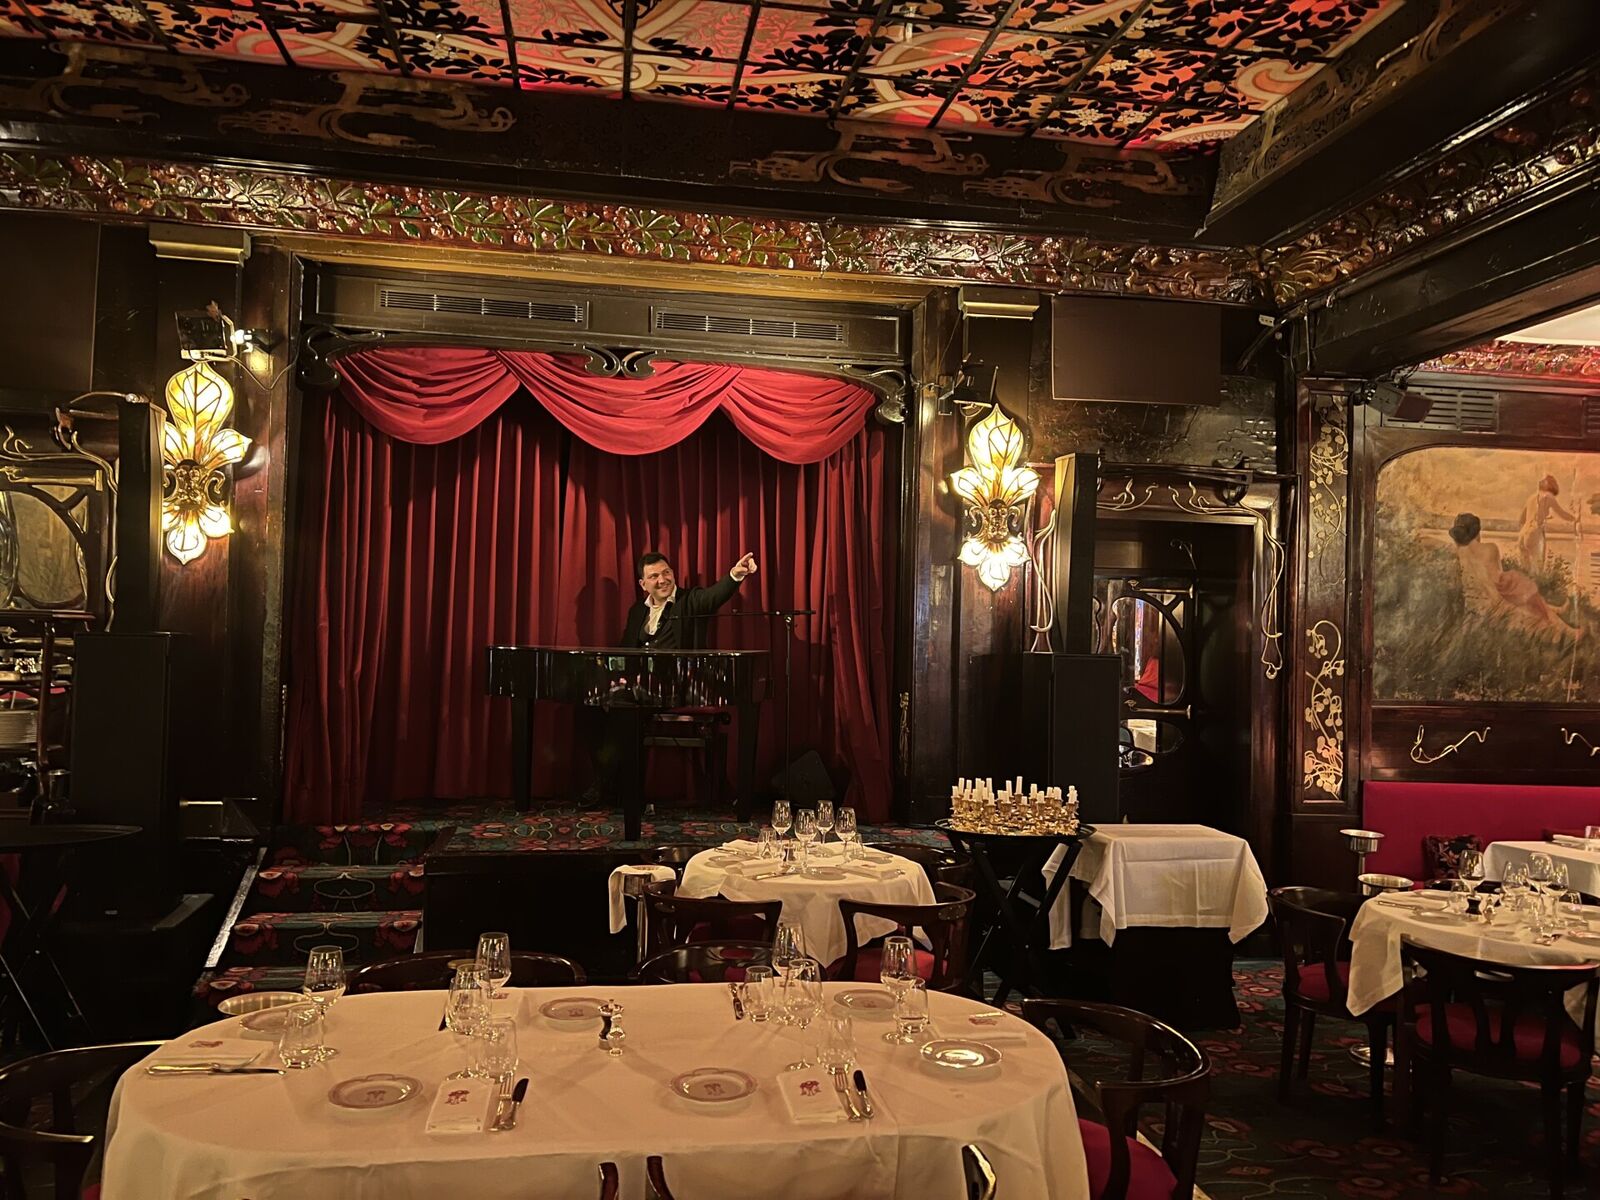 Antonio Terio bak pianoet på en av de vakreste eldste restaurantene i Paris: Maxim's de Paris. Restauranten er kledd i tredetaljer og er fullstendig beskyttet av høytrykksvanntåkesystem. Foto: privat